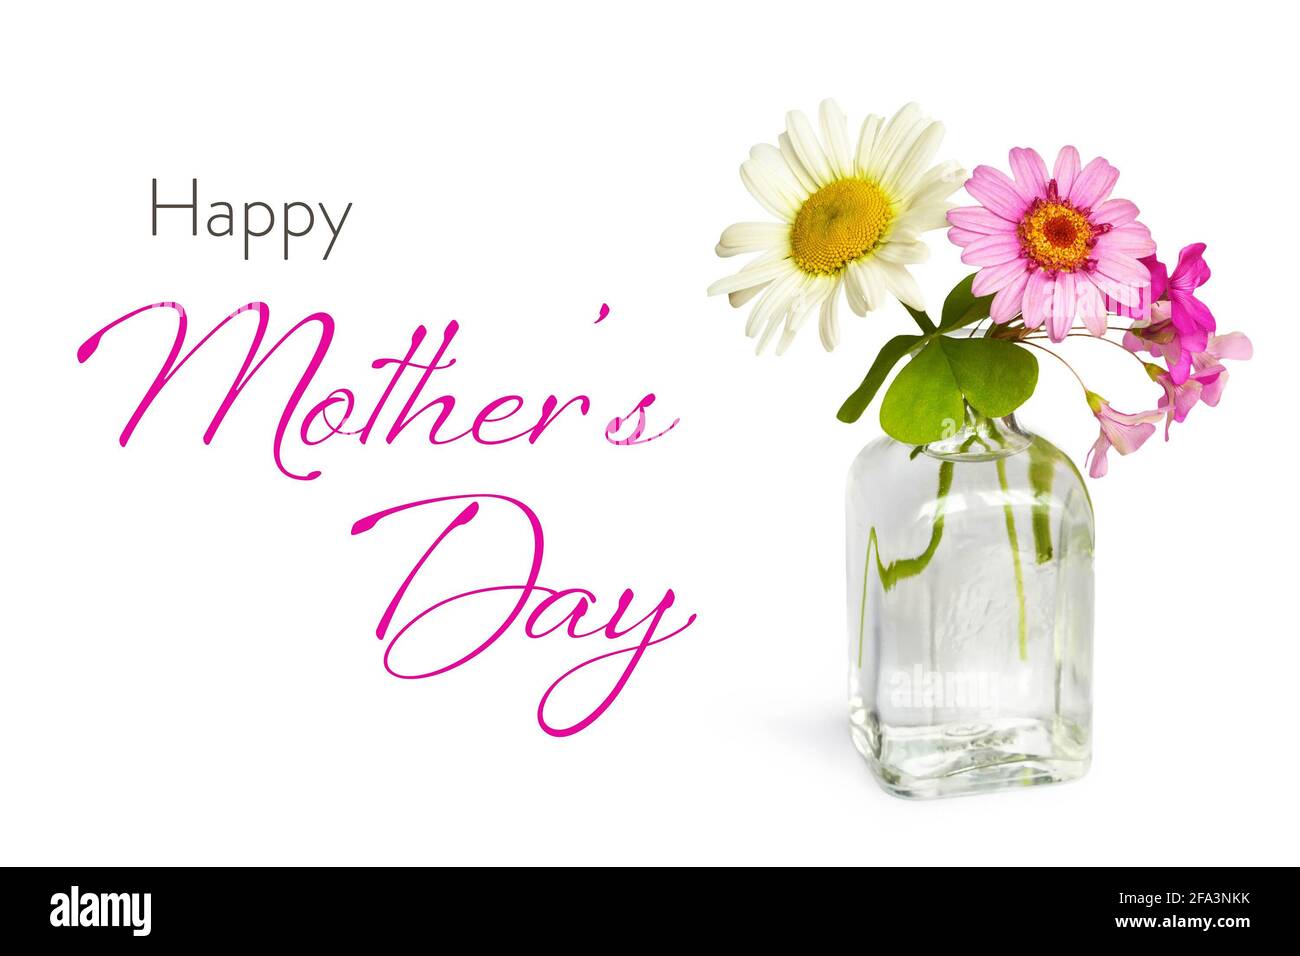 Happy Mothers carta giorno con fiori primaverili in vaso isolato su sfondo bianco Foto Stock